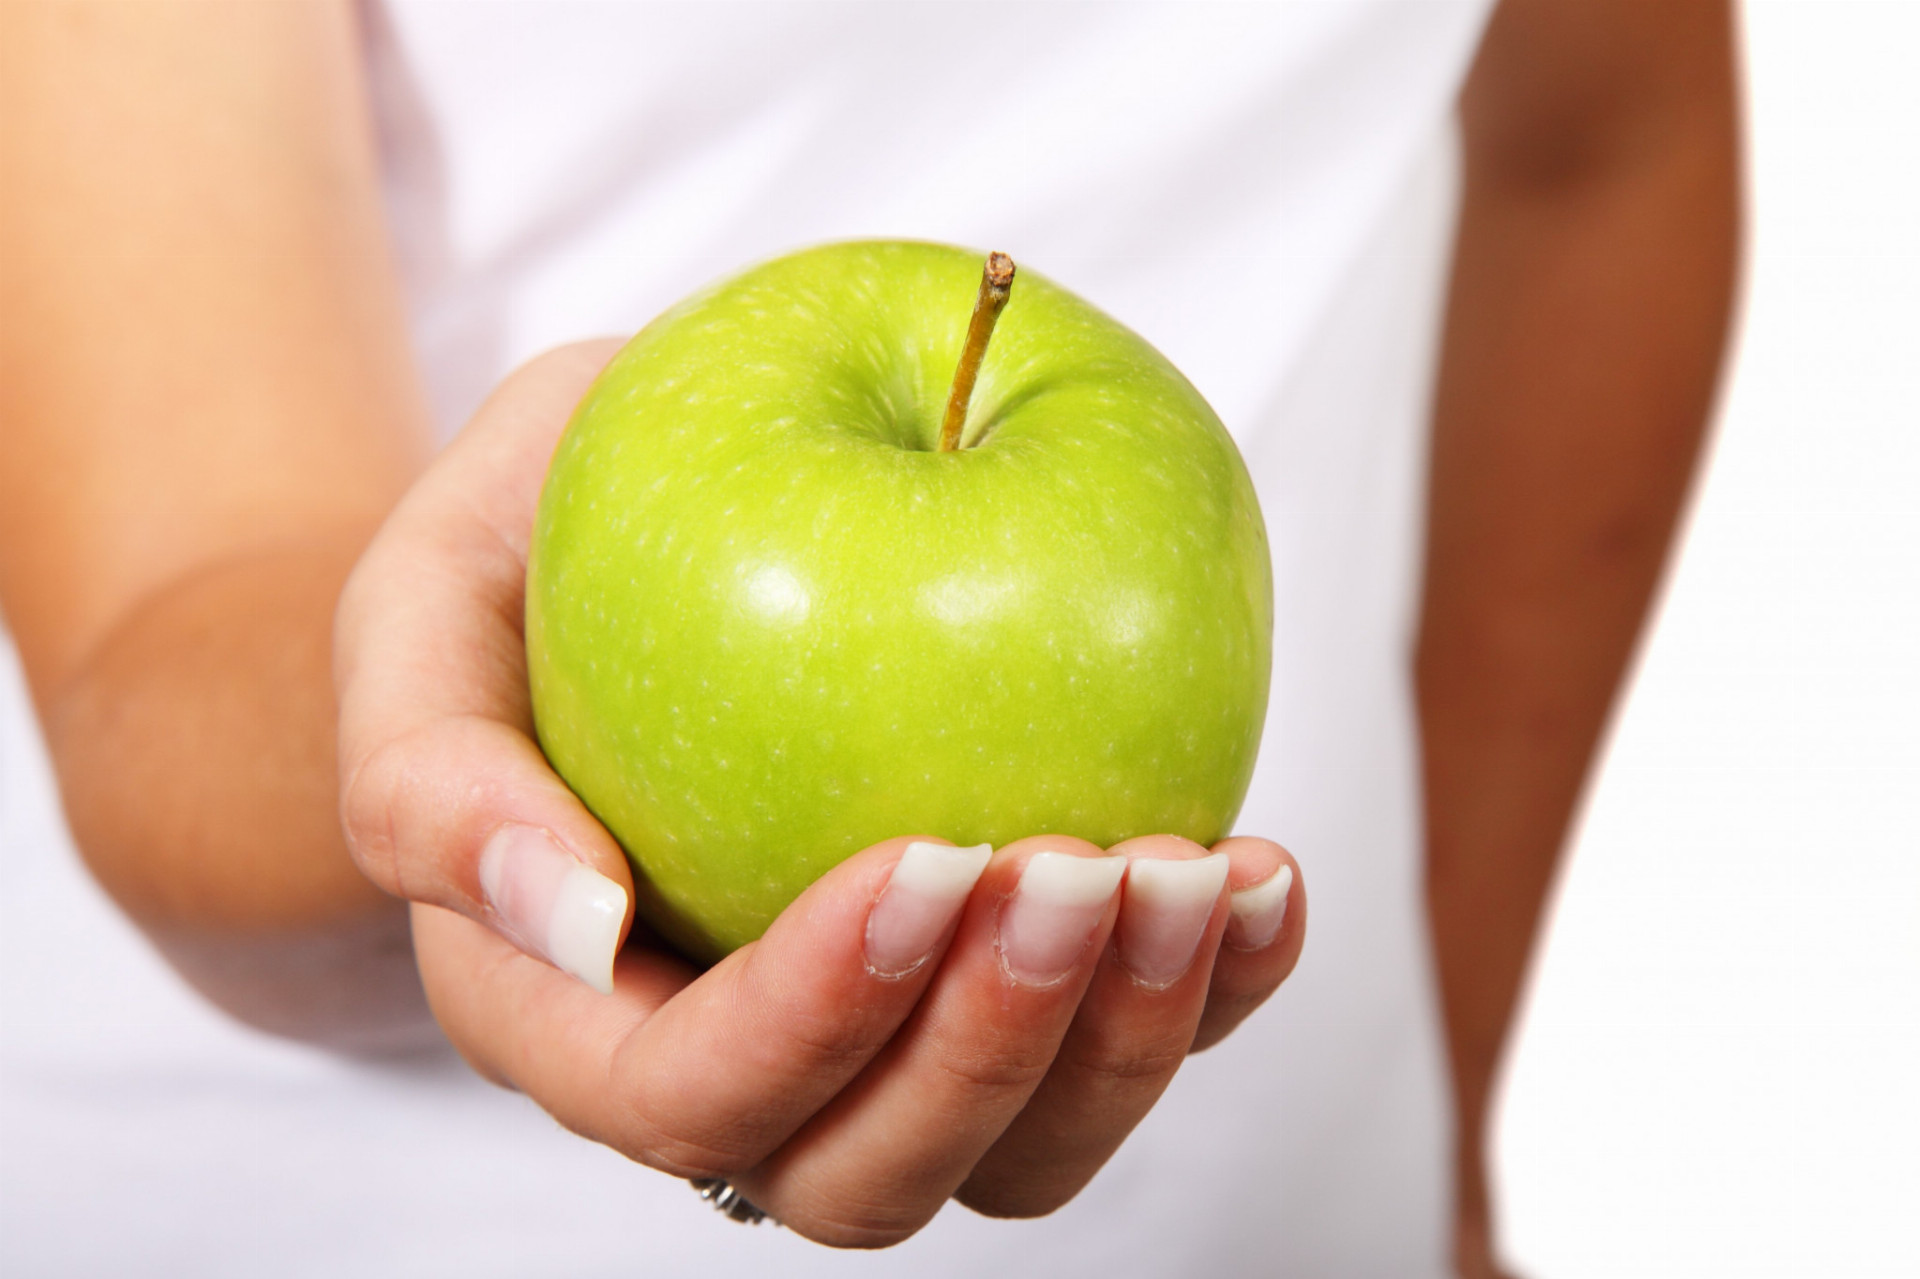 "Majú niektoré vitamíny a šupka je vhodná na trávenie a čistí zuby," hovorí Finkelstein. "Je to zdravé ovocie. Avšak jablká obsahujú veľa vody a vzduchu. Z hľadiska imunity nemá ovocie žiaden rozdiel. "Jablká sa tiež objavujú v zozname výrobkov, ktoré obsahujú najviac pesticídov.